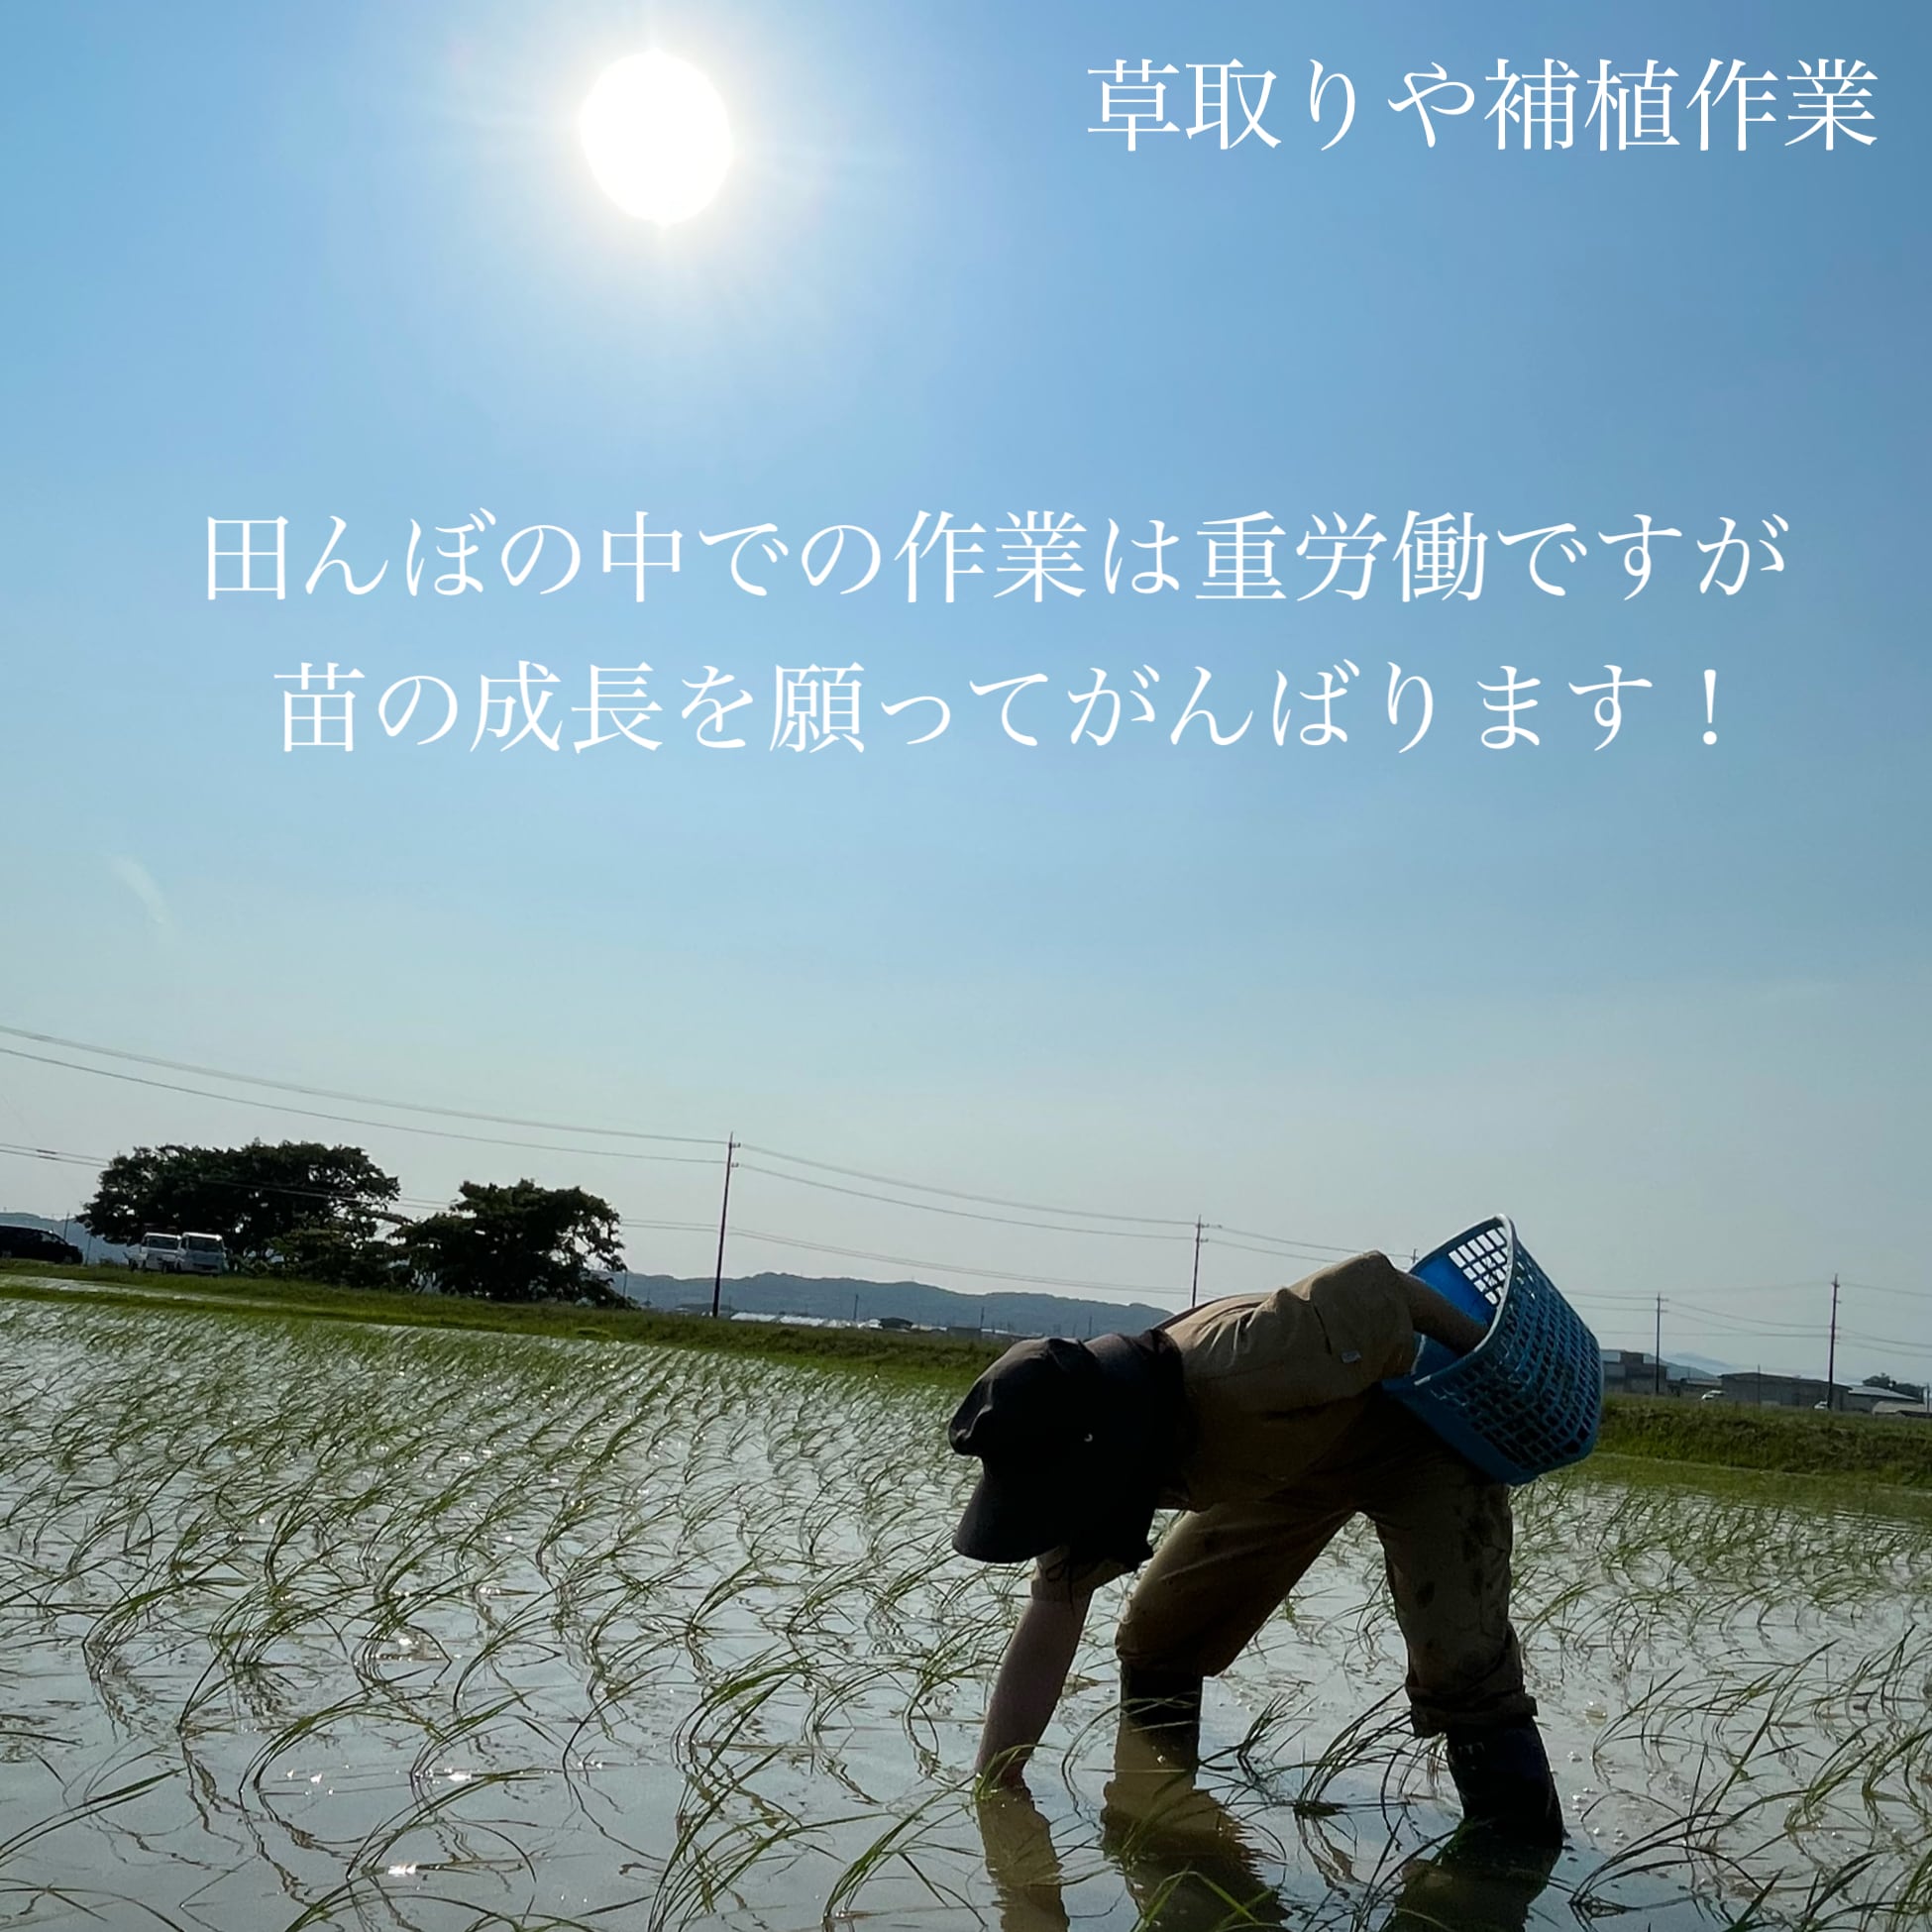 無農薬米令和5年新米 自然栽培米 ササニシキ玄米20kg 農薬不使用・肥料不使用